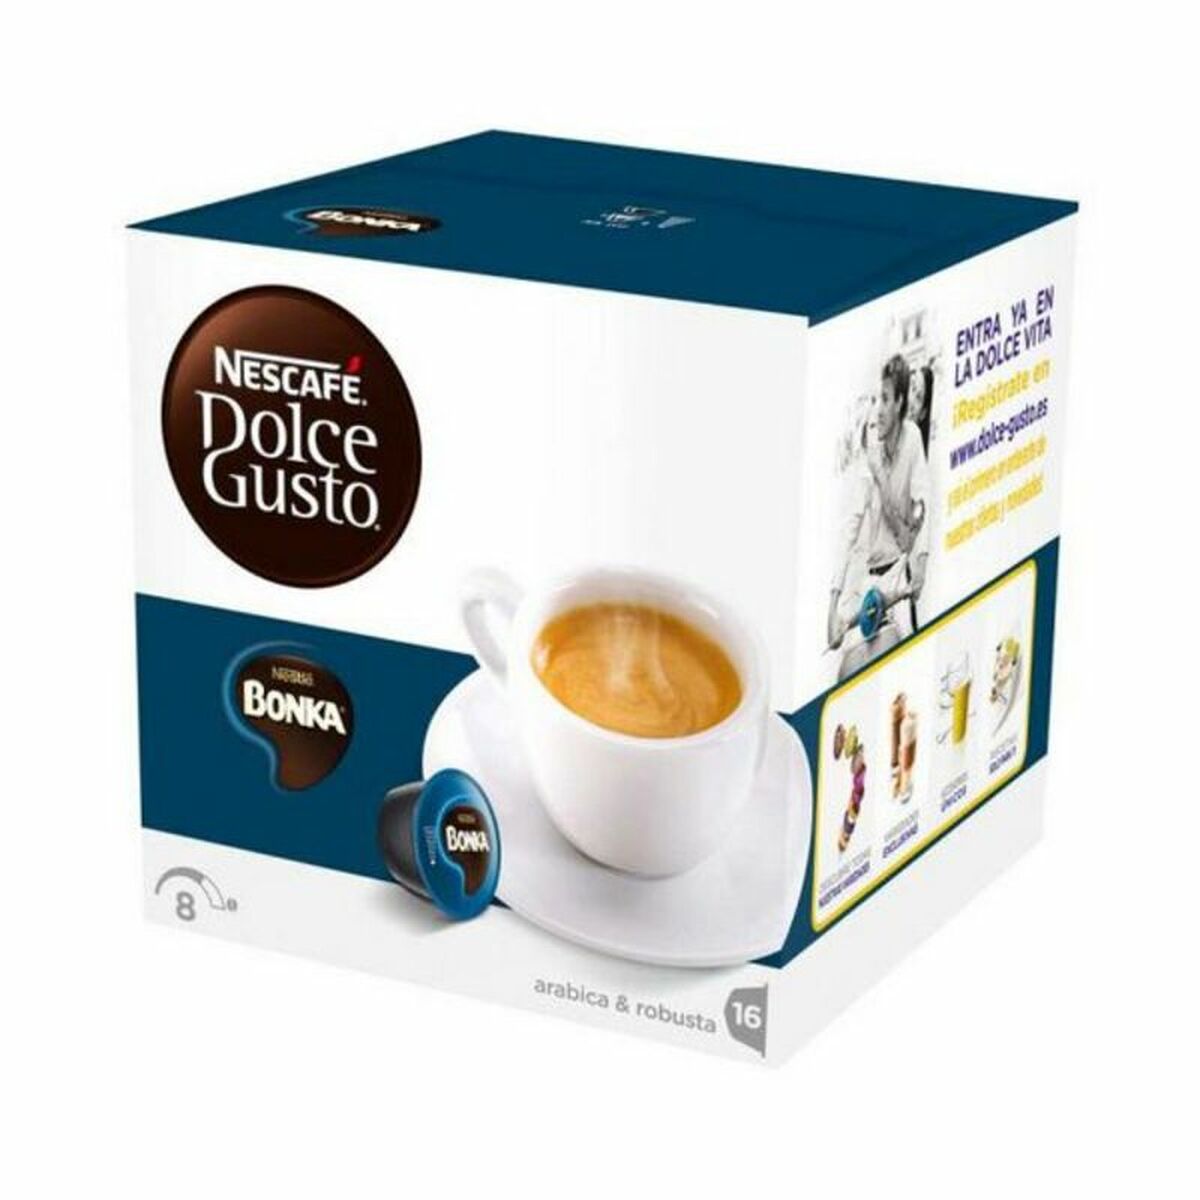 Coffret Nescafé Dolce Gusto 13758 Espresso Bonka (16 uds)